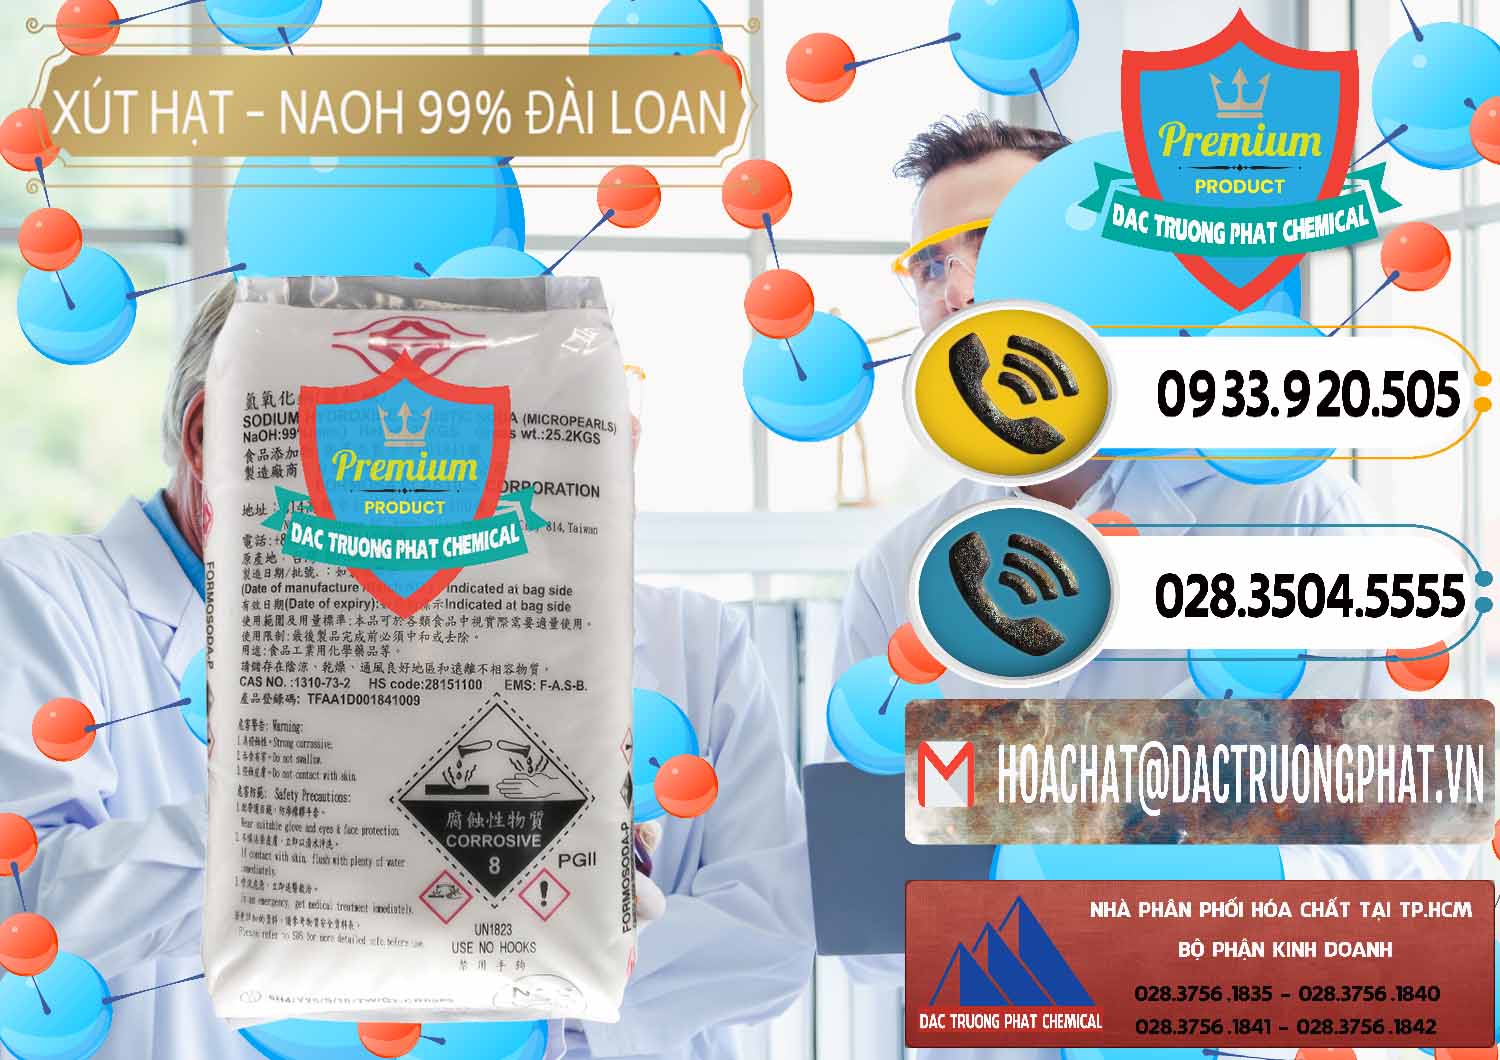 Công ty chuyên bán & phân phối Xút Hạt - NaOH Bột 99% Đài Loan Taiwan Formosa - 0167 - Cty phân phối _ cung cấp hóa chất tại TP.HCM - hoachatdetnhuom.vn